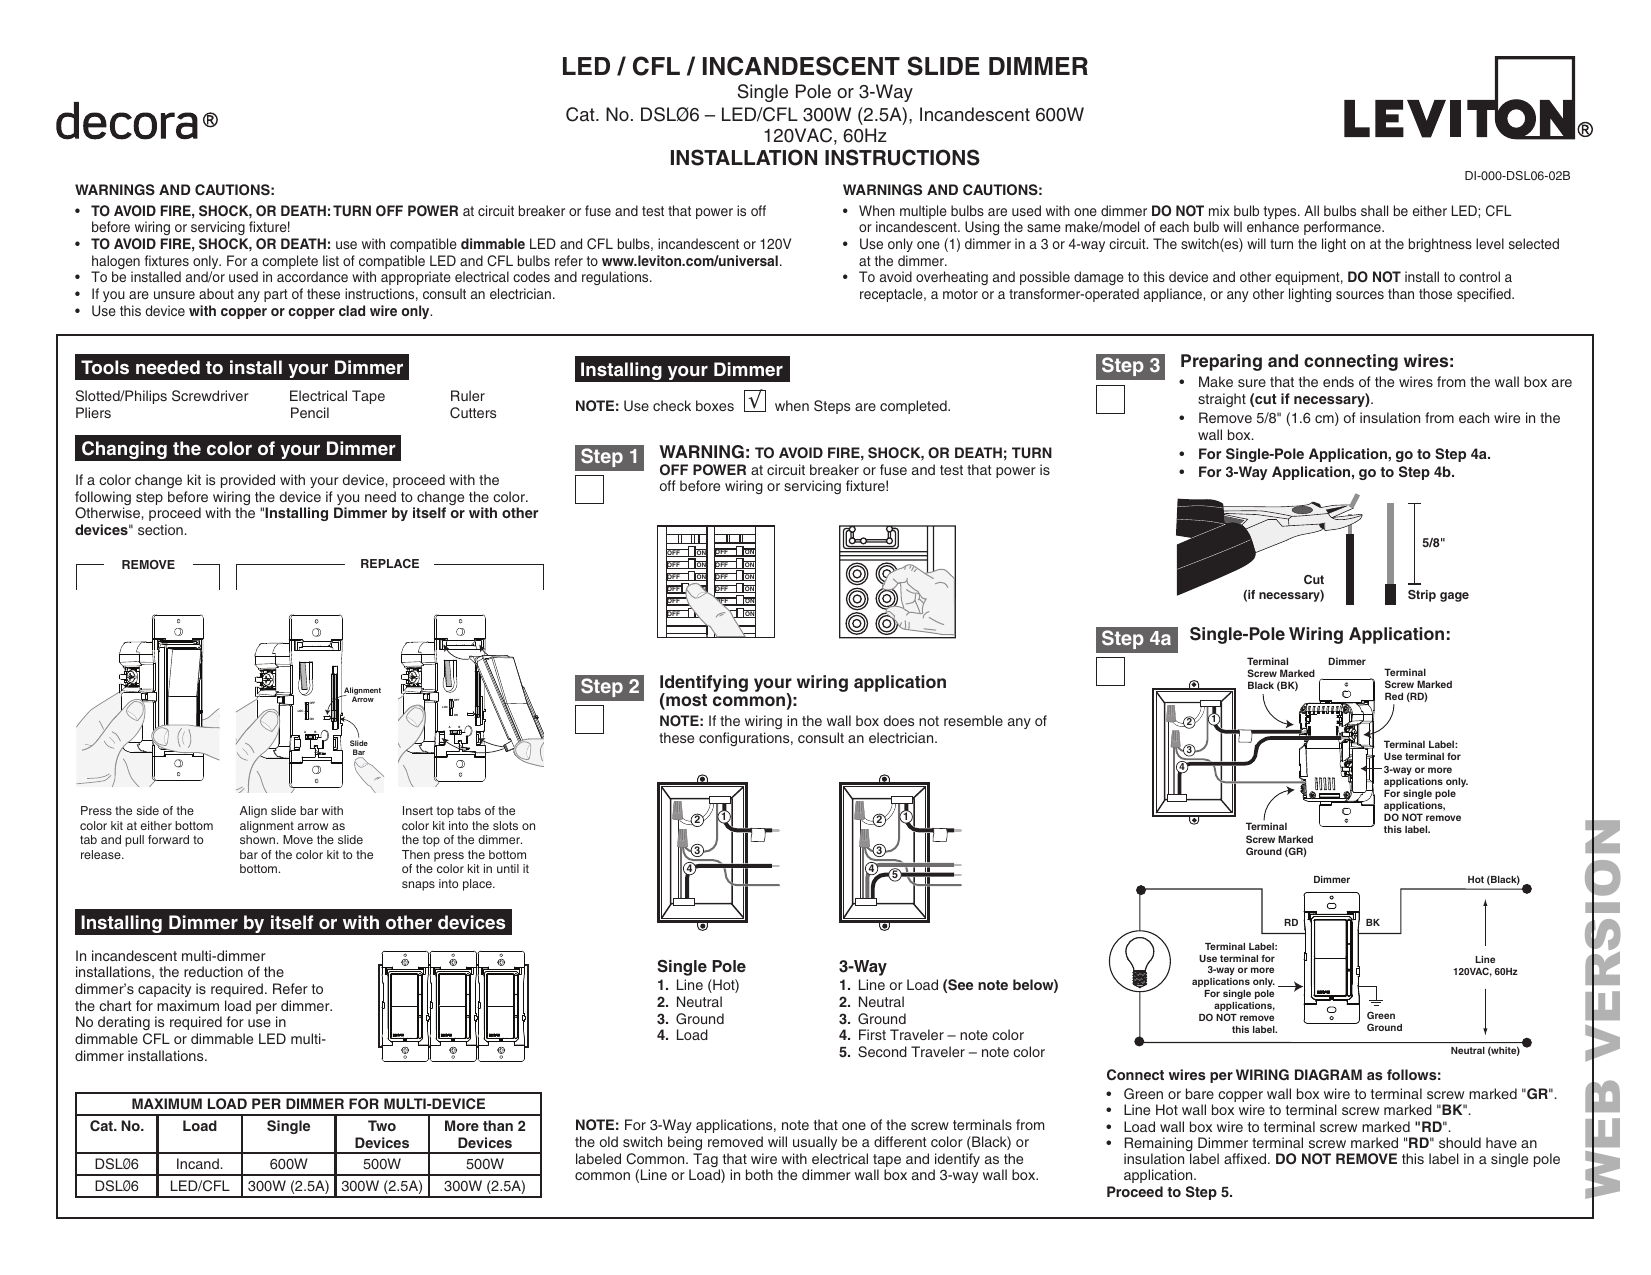 leviton dsl06 1lz decora rocker slide instruction sheet manualzz honeywell 240v thermostat wiring diagram